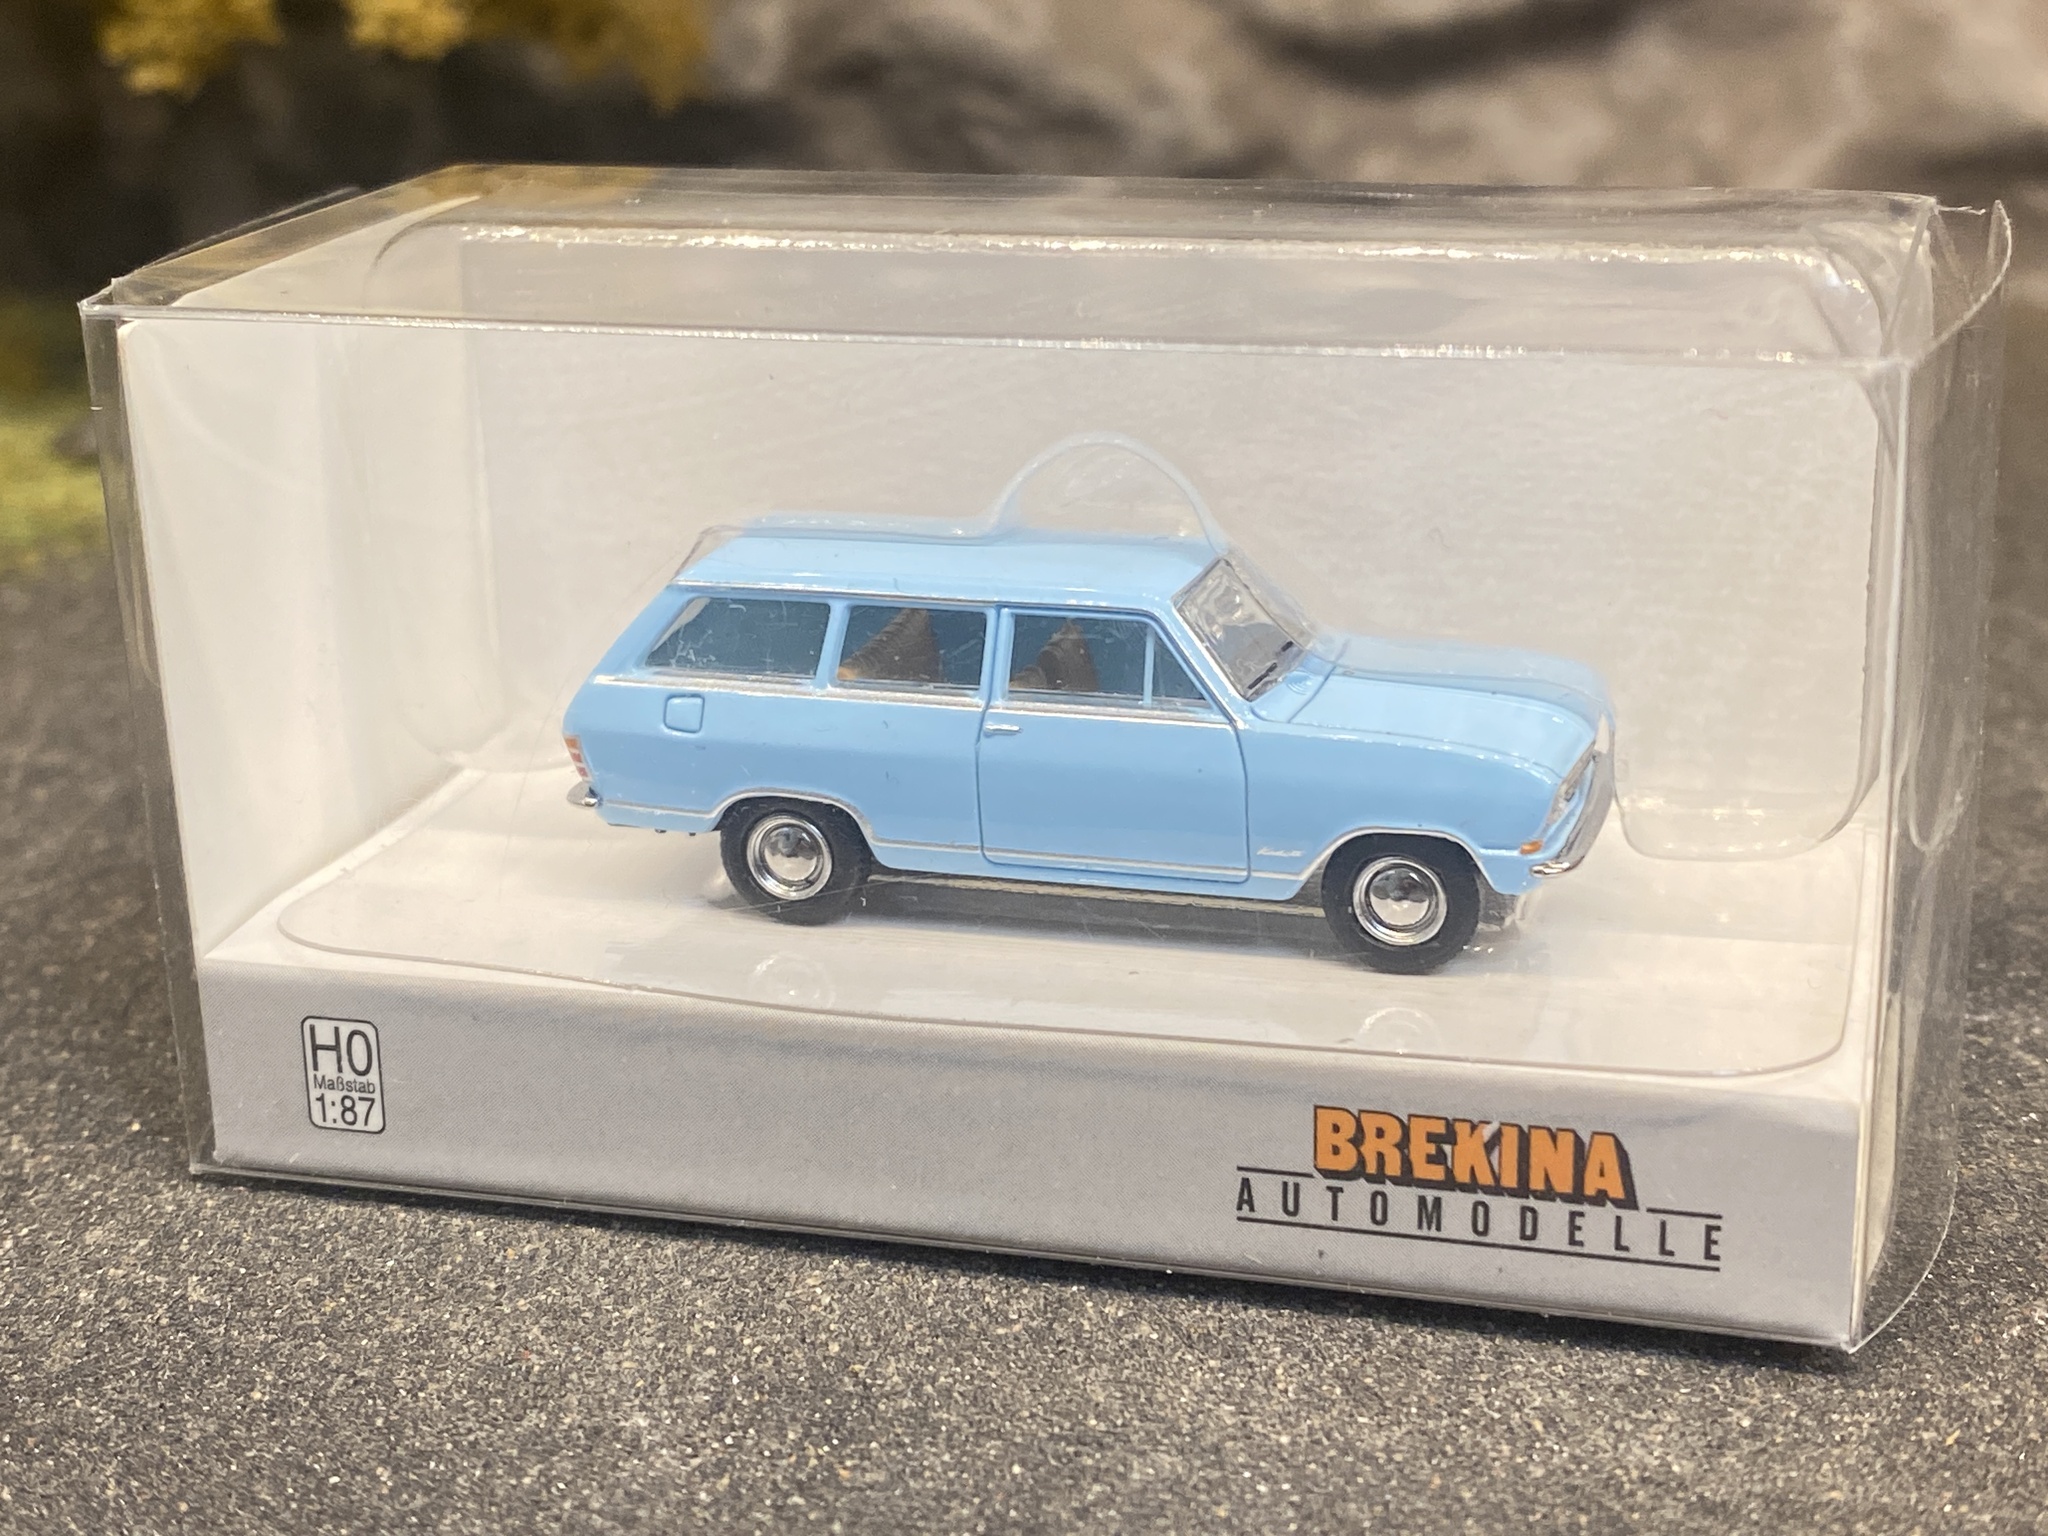 Skala 1/87 - Opel Kadett B Caravan, light blue fr Brekina